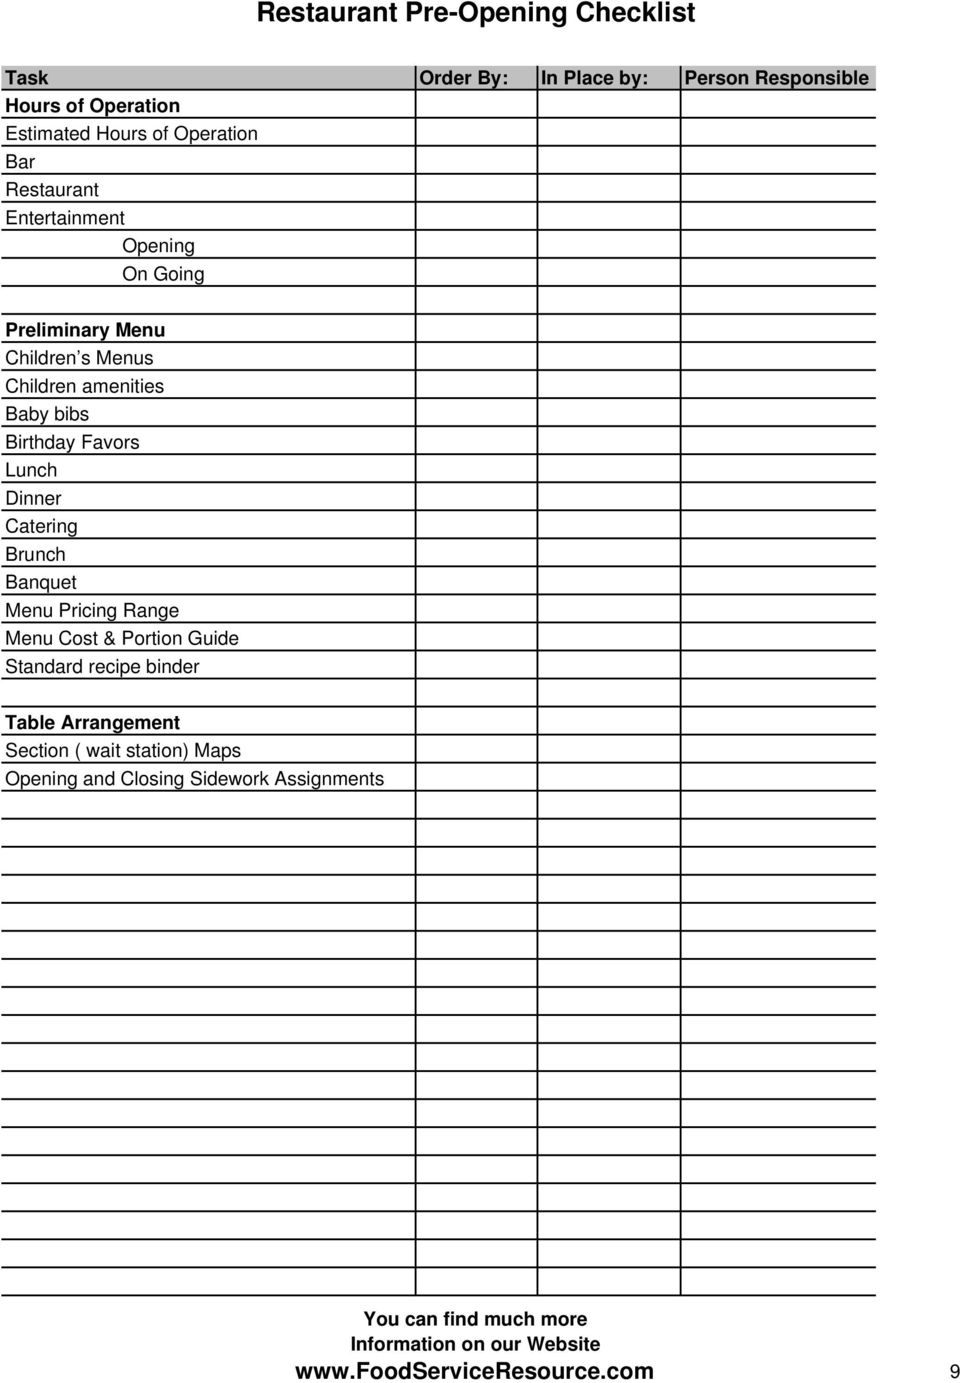 Restaurant Pre-Opening Checklist - PDF Free Download Regarding Restaurant Side Work Checklist Template For Restaurant Side Work Checklist Template